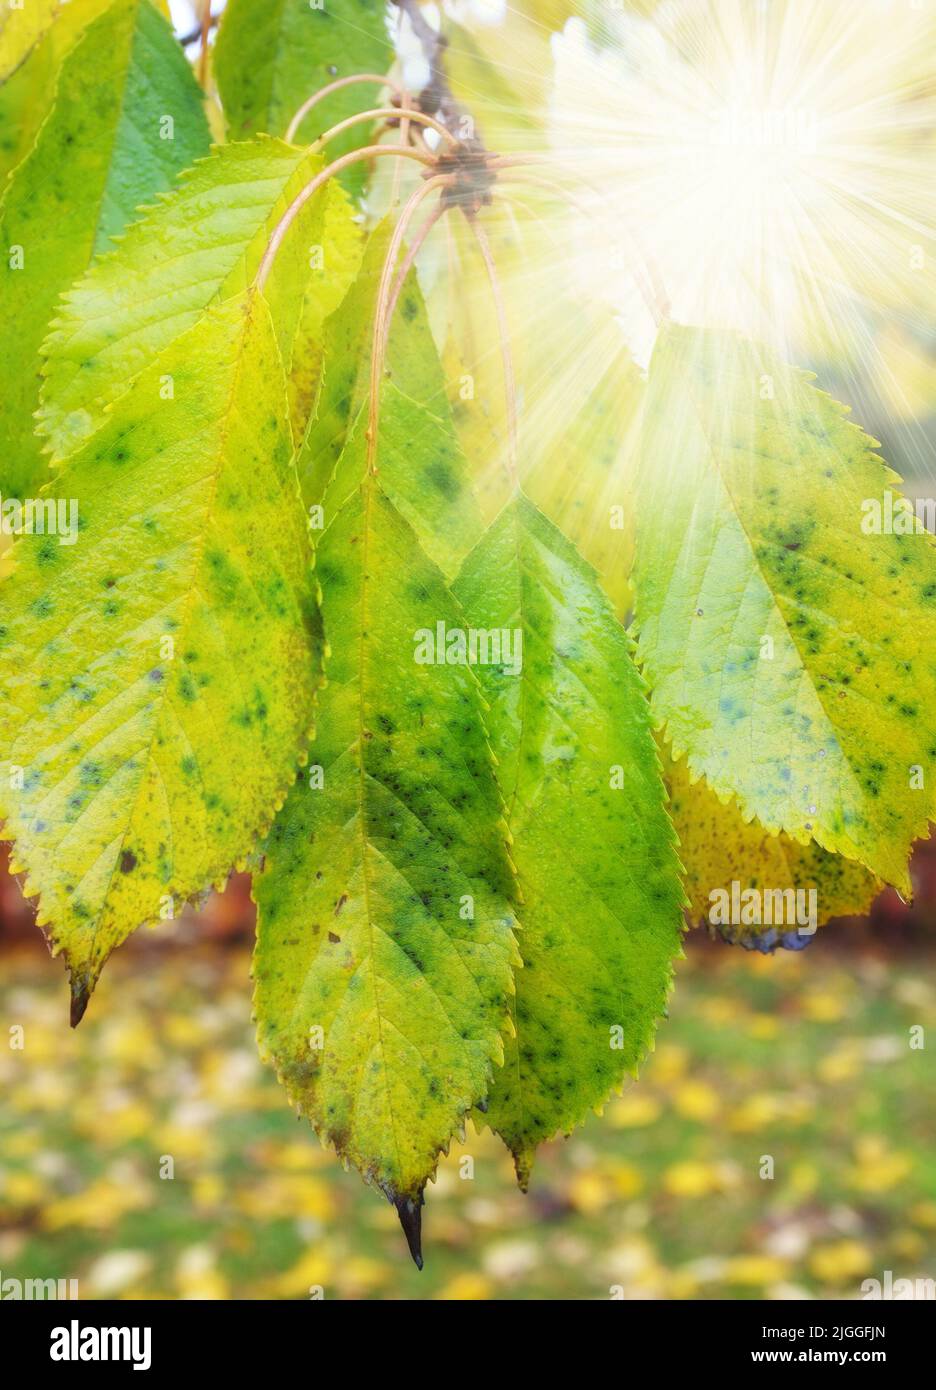 Eine Nahaufnahme der Sonnenstrahlen scheint durch die grünen und gelben Blätter an den Ästen des Baumes. Hölzer mit trockenem, strukturfarbenem Laub in einer ruhigen Umgebung Stockfoto